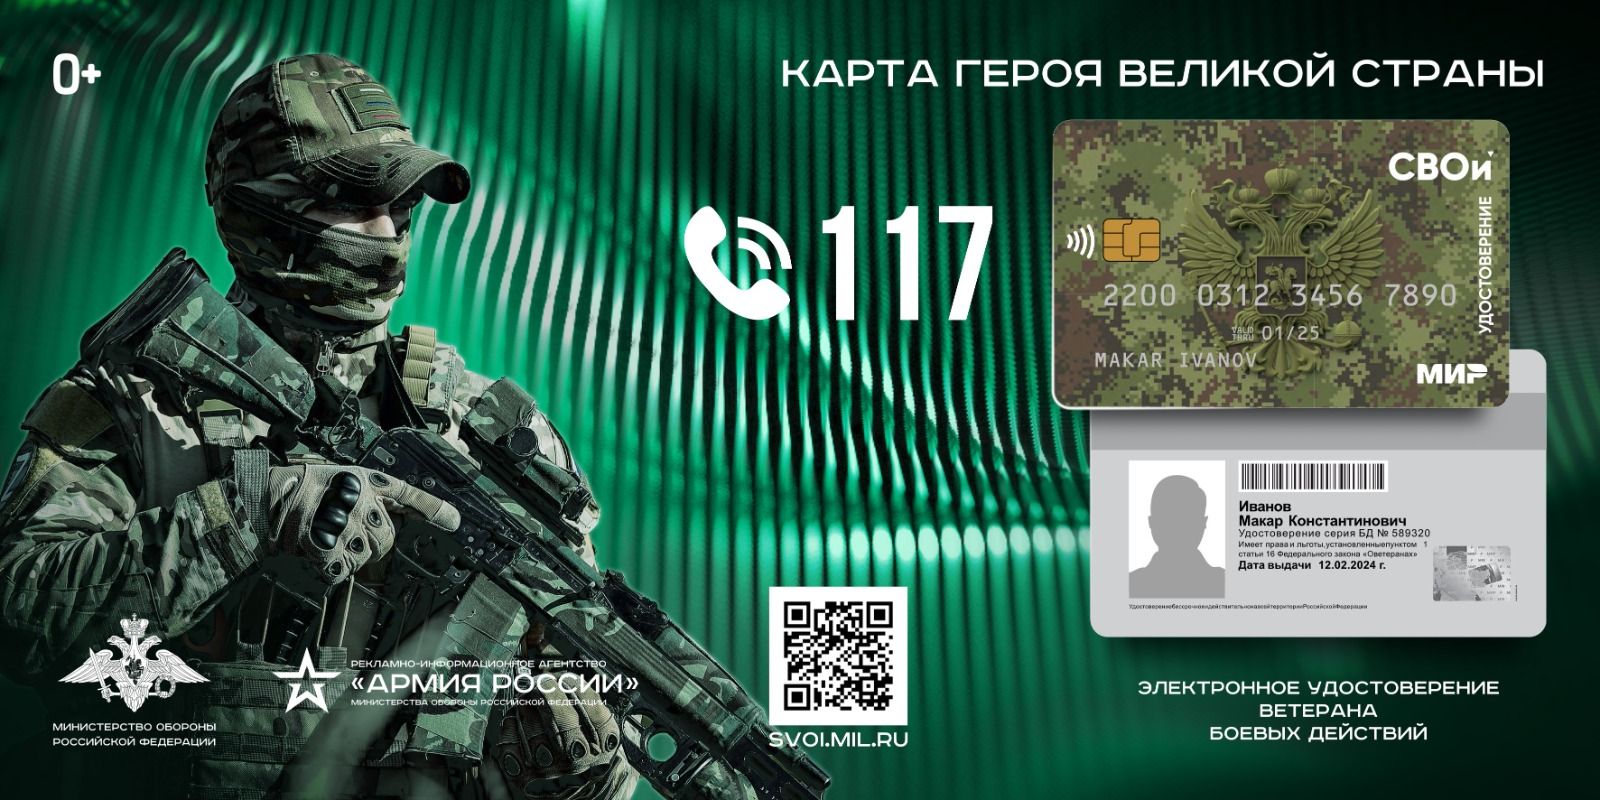 Министерство обороны РФ внедряет электронное удостоверение ветерана боевых действий «СВОи» в виде пластиковой карты.